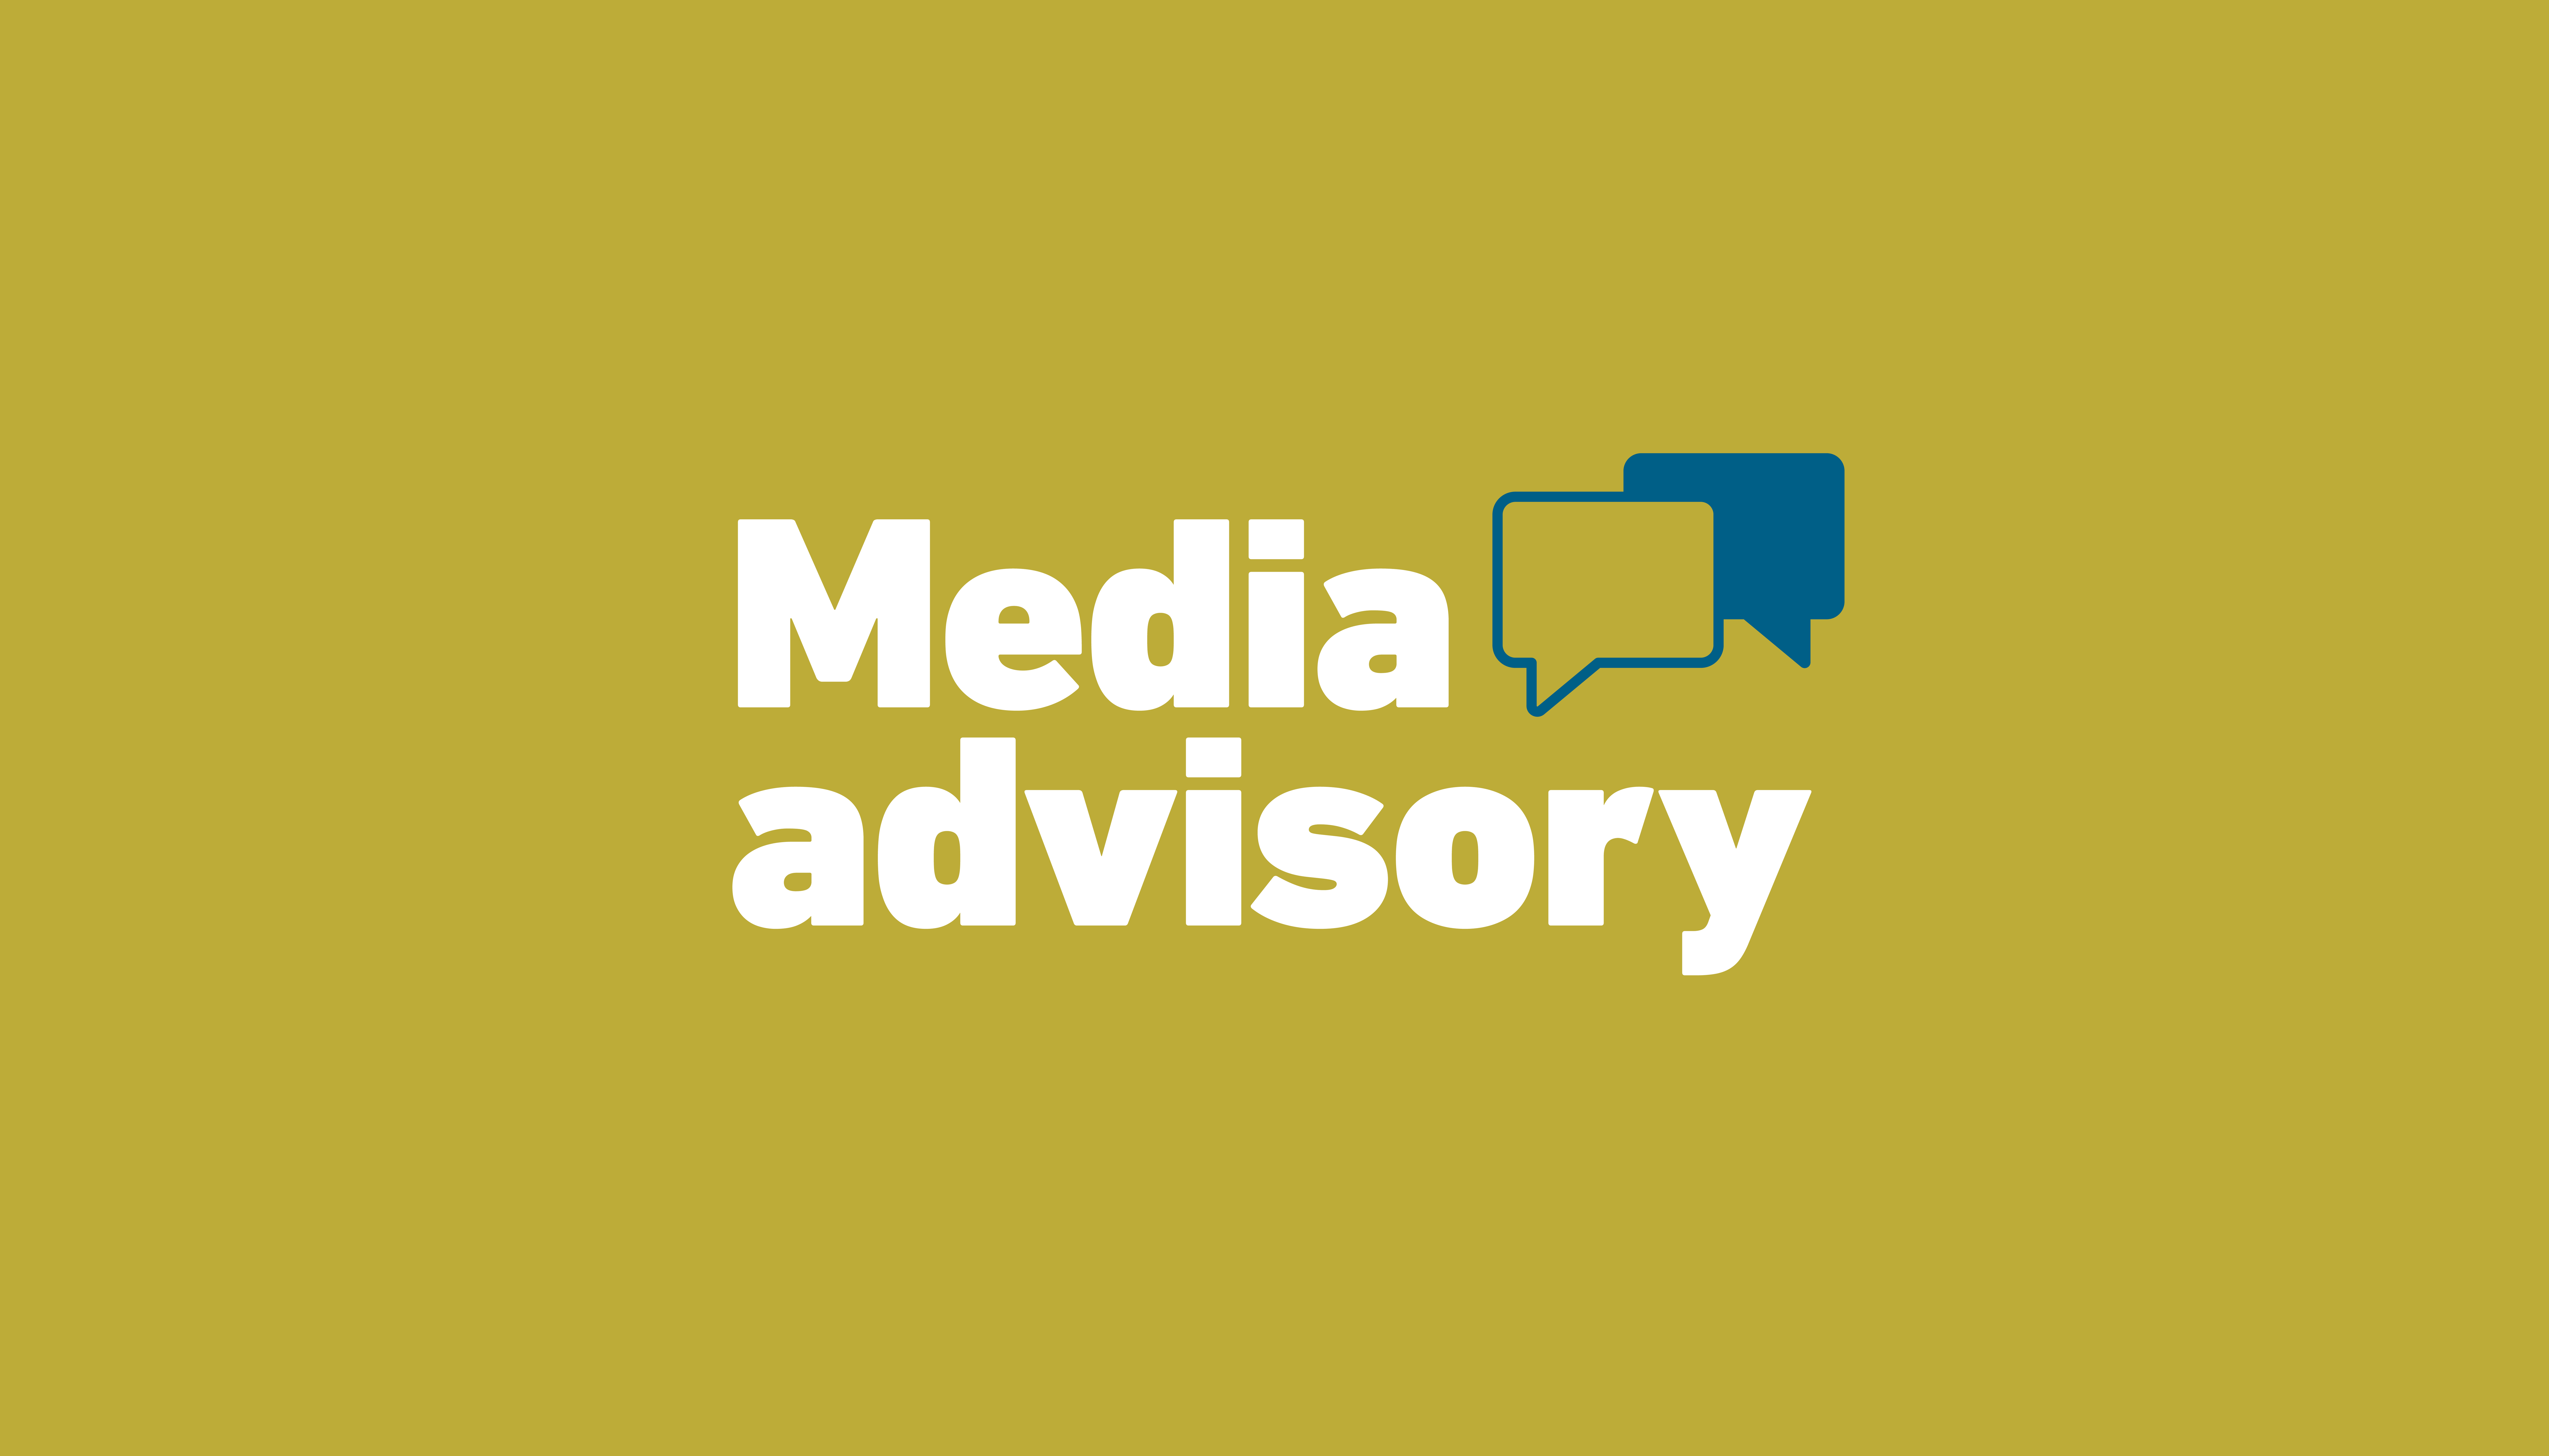 Media advisory